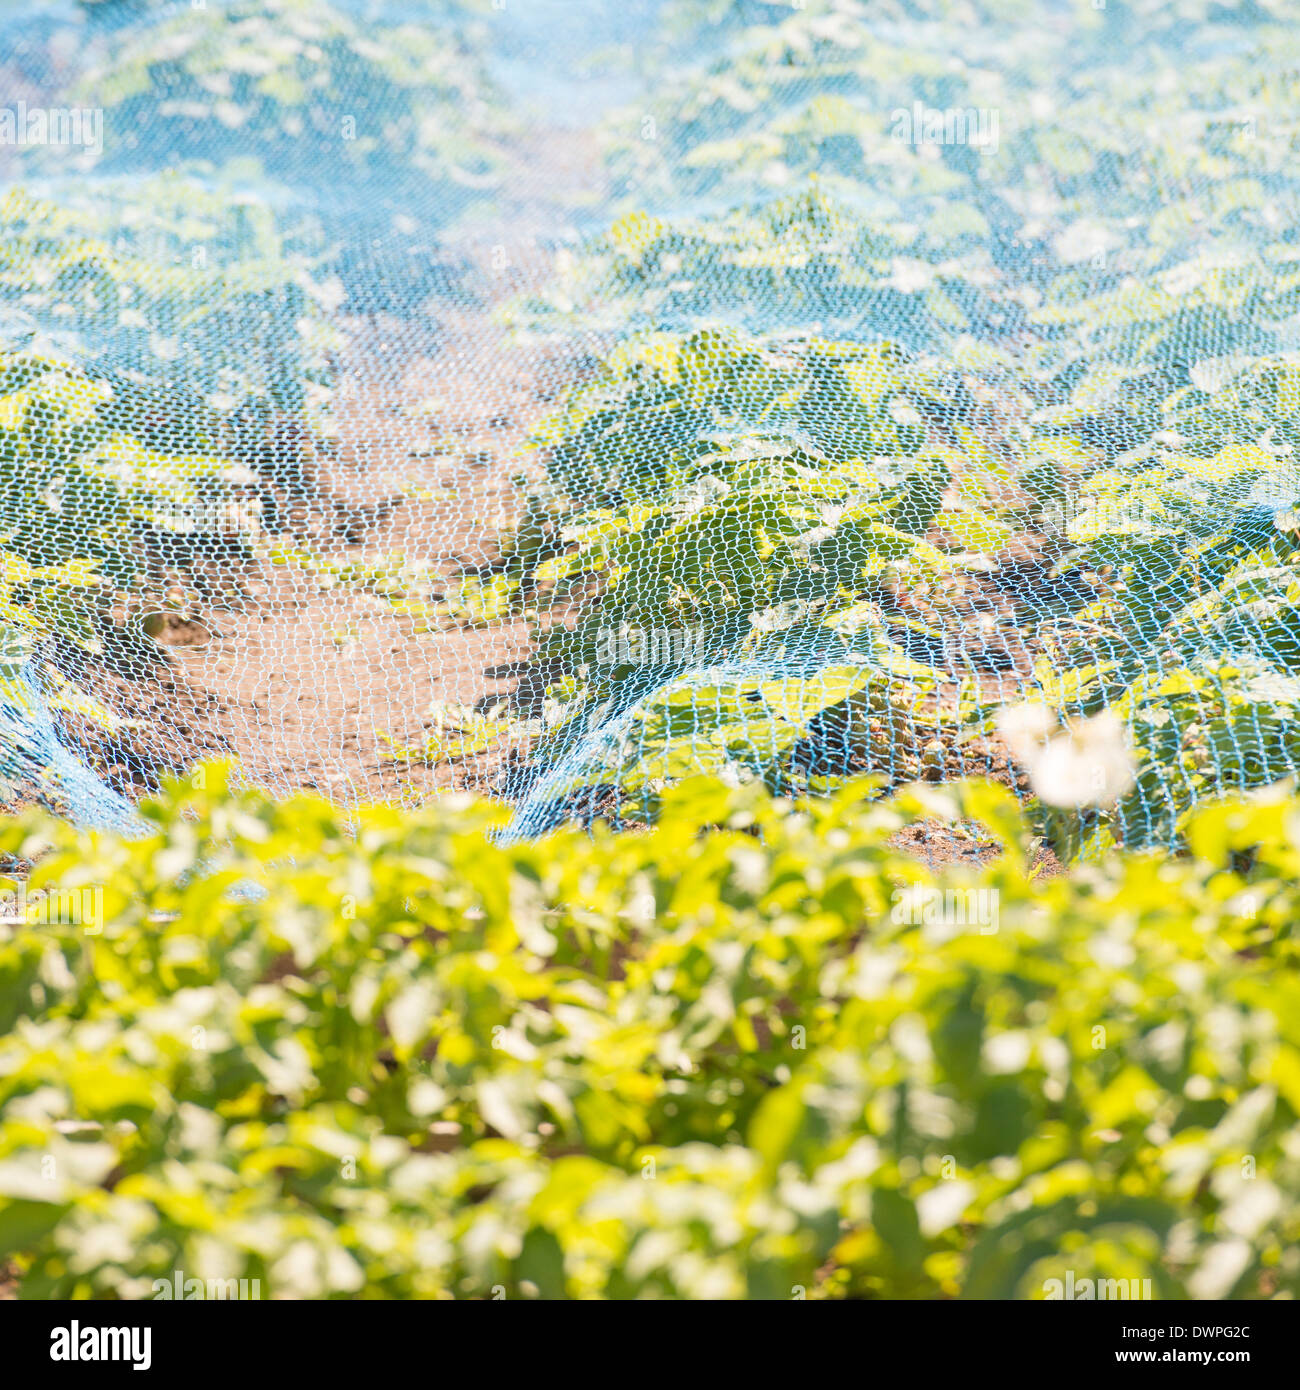 Piante che crescono nel giardino nel letto di vegetali protette da rete in plastica Foto Stock